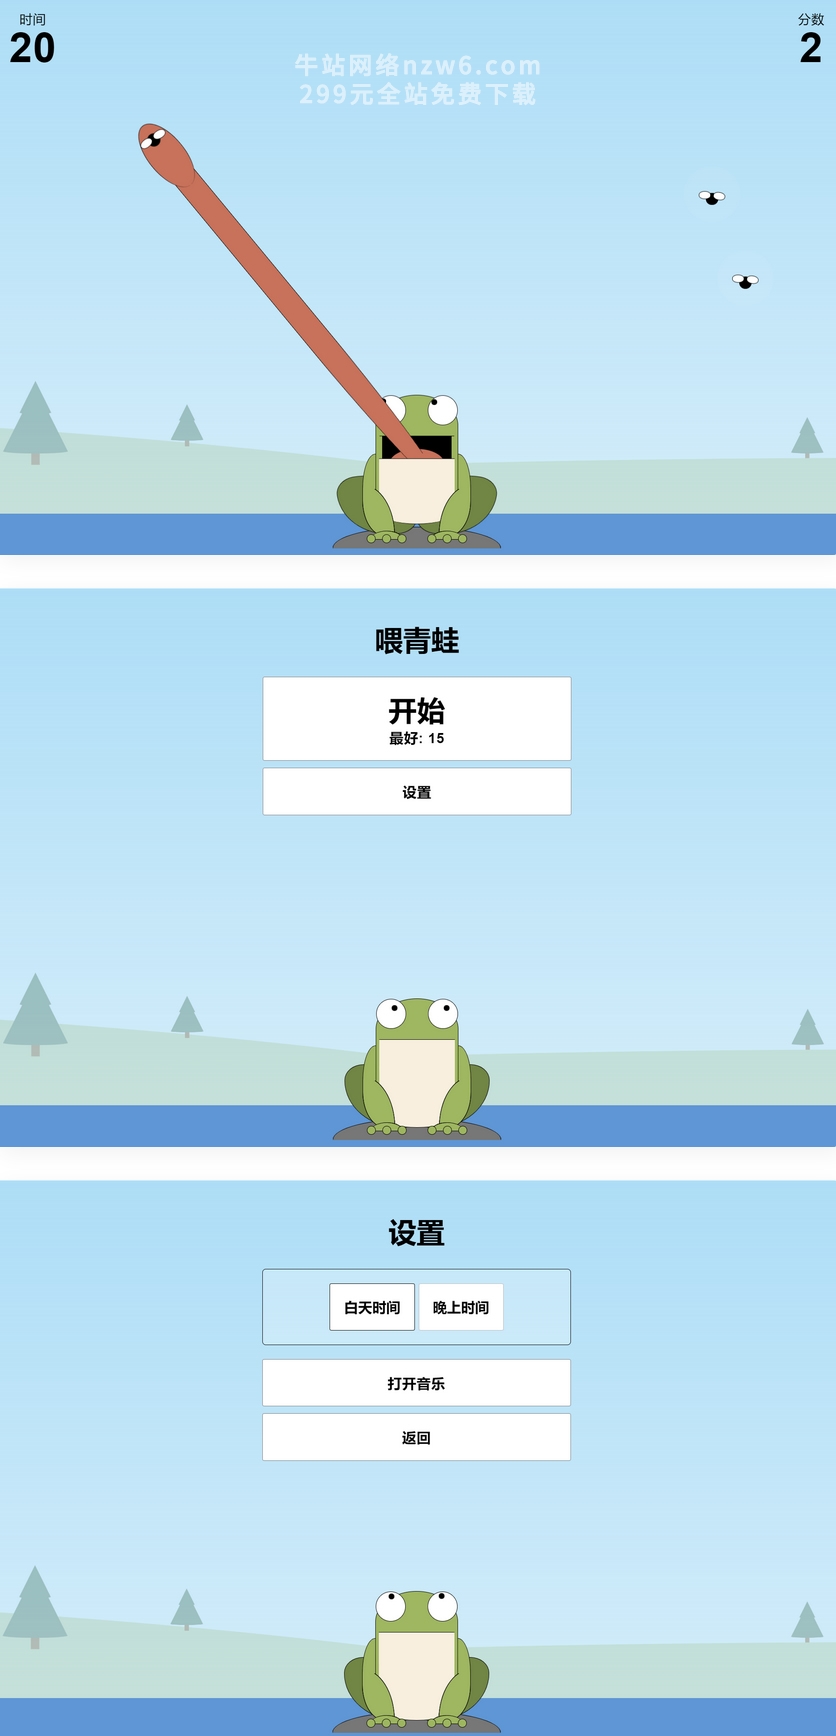 青蛙吃蚊子小游戏源码/自适应手机端